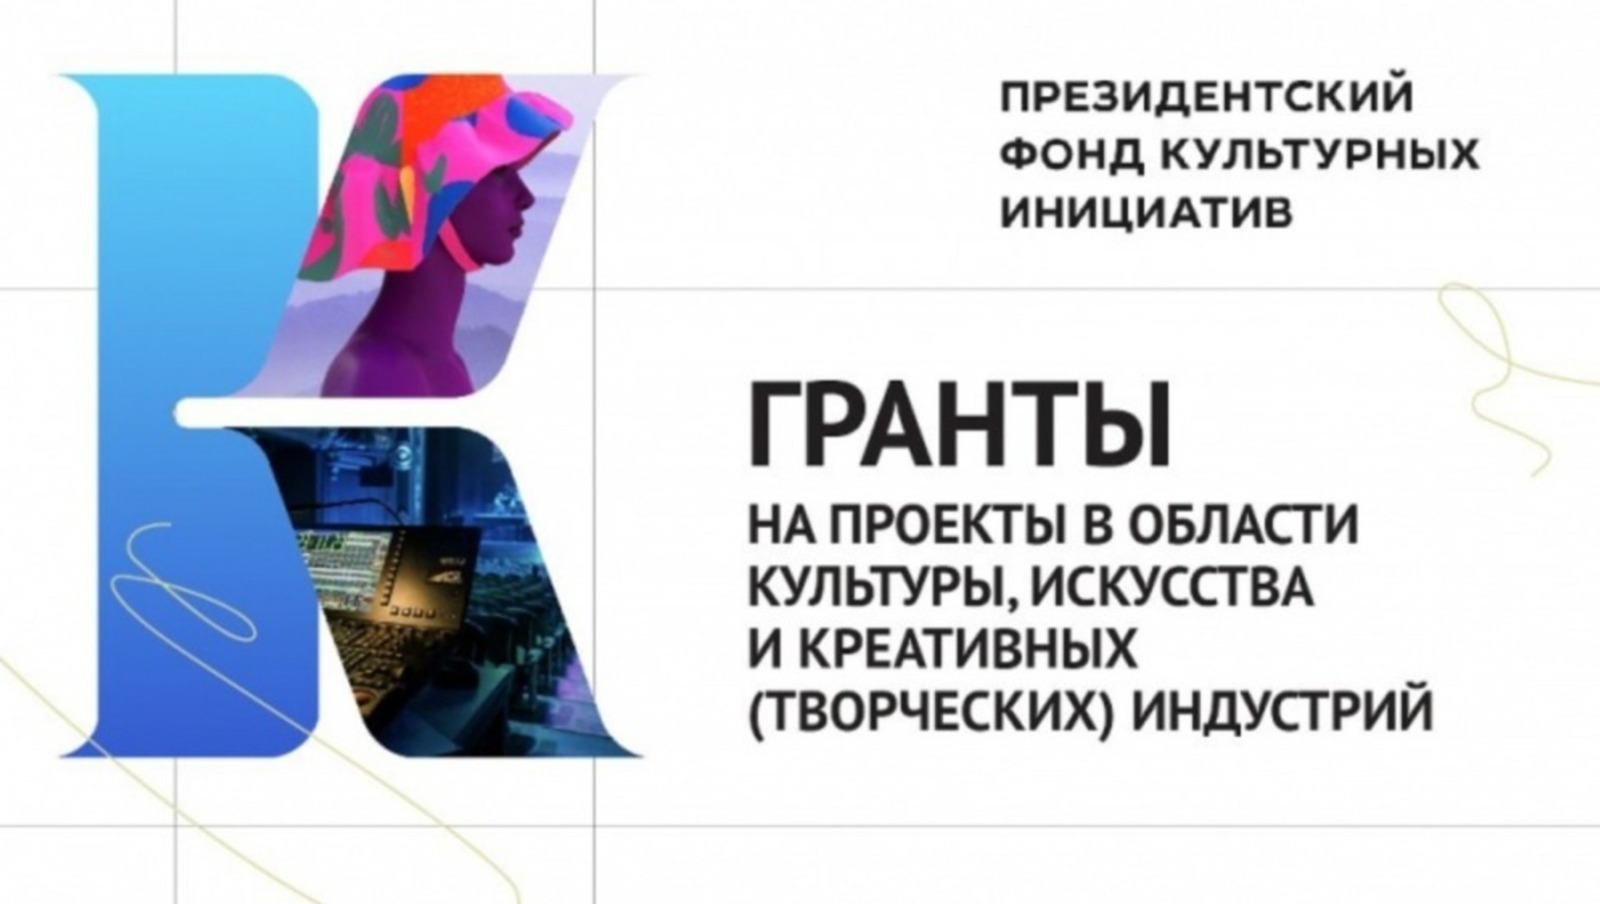 На новый грантовый конкурс Фонда культурных инициатив выделен 1 млрд рублей